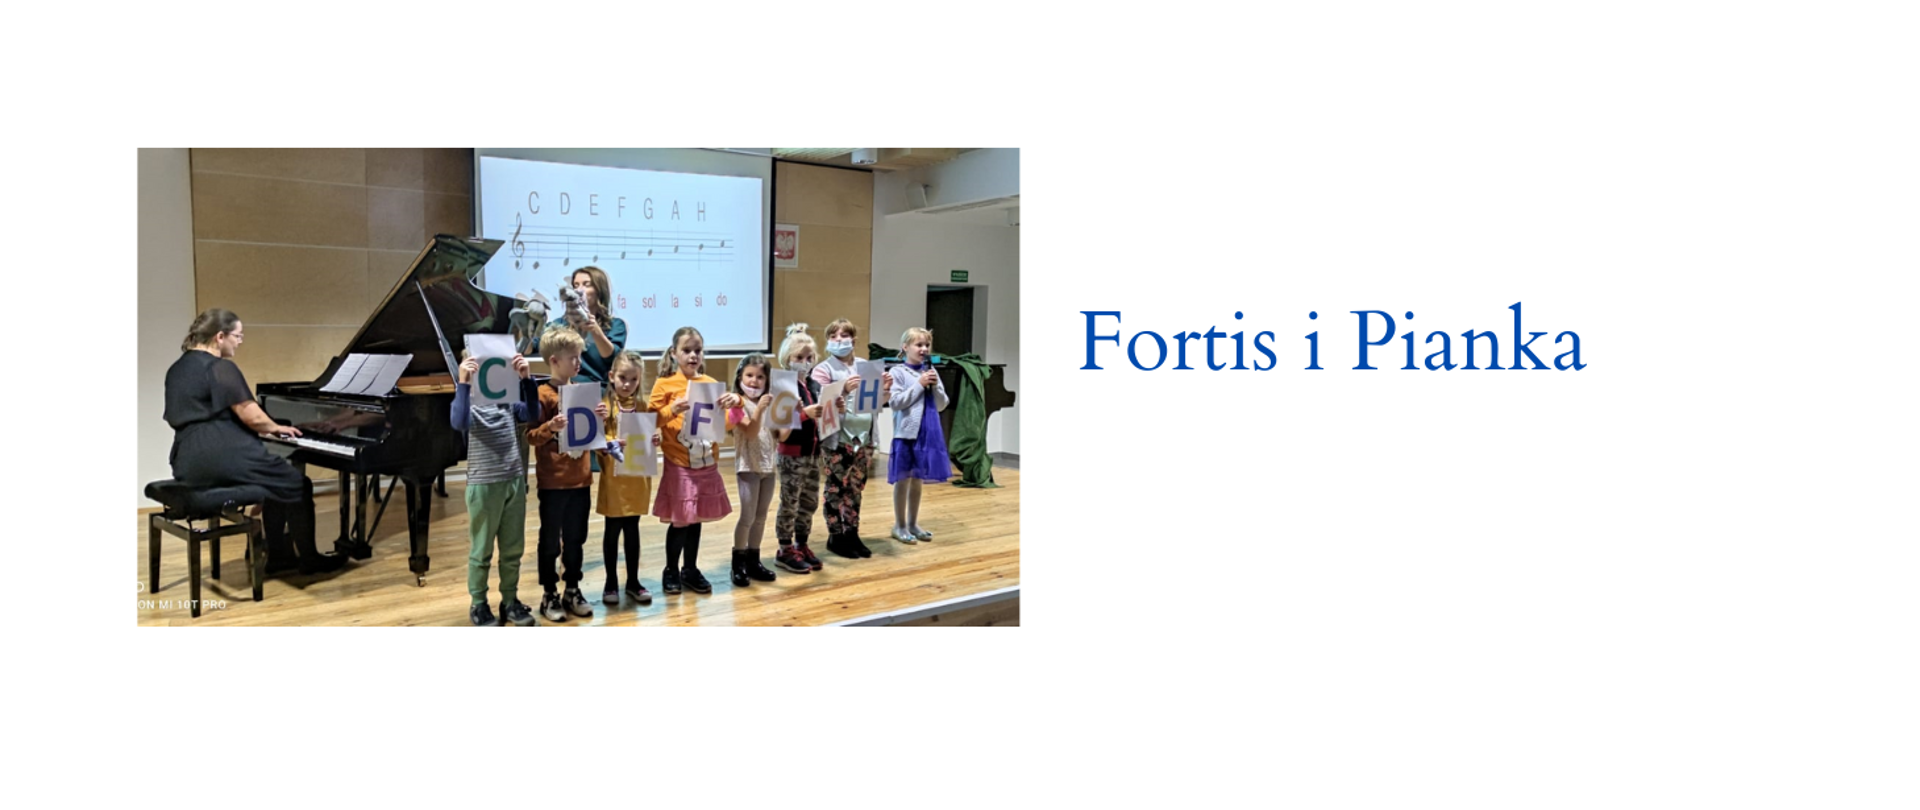 Obraz zapowiadający przedstawienie "Fortis i Pianka". Przedstawiający grupkę dzieci na scenie oraz nauczycielkę przy fortepianie